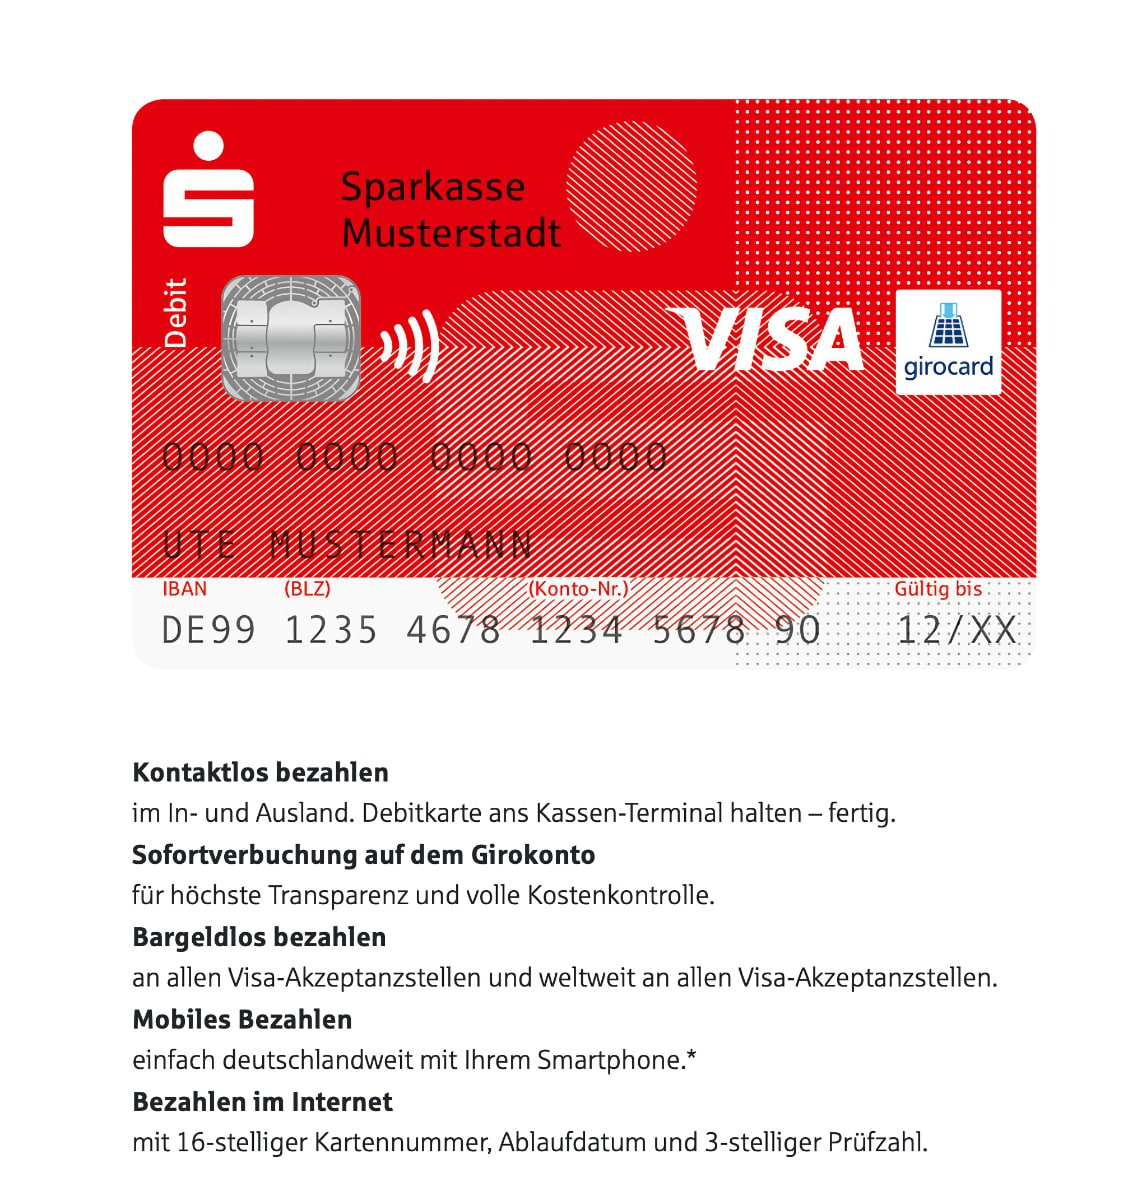 sparkassen-card-mit-visa-debitkarte-als-co-badge-startet